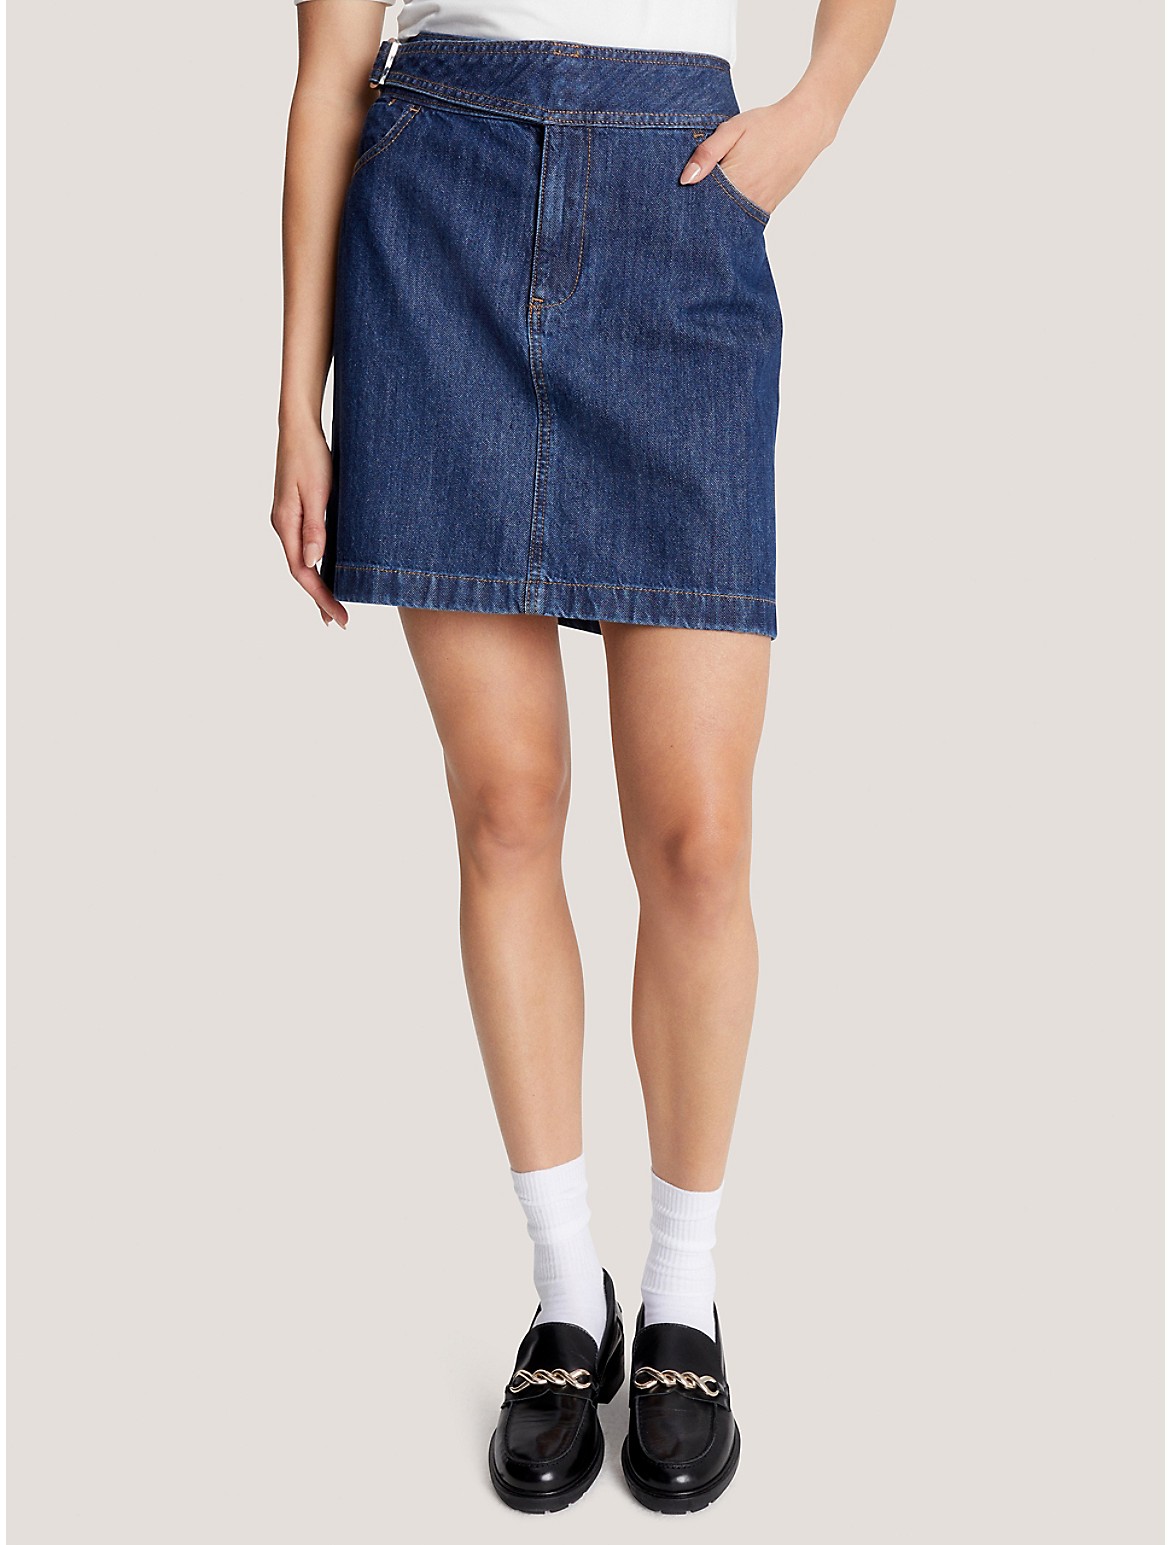 Tommy Hilfiger Women's High-Waist Belted Denim Mini Skirt - Blue - 8